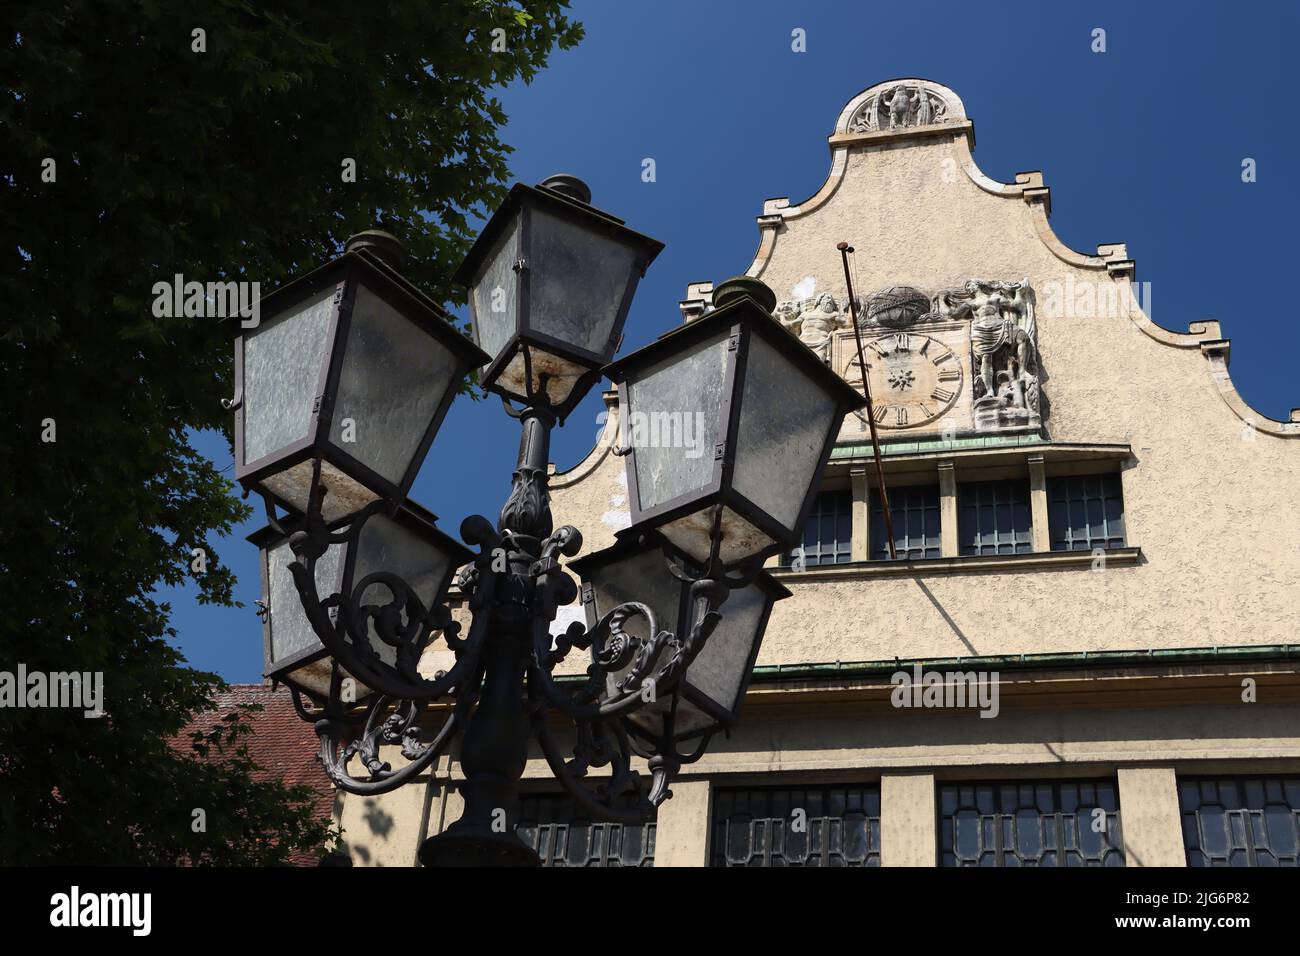 la antigua farola contiene cinco lámparas separadas para iluminar la noche.  foto tomada en bavaria, lindau con el cielo azul frente a un edificio  histórico Fotografía de stock - Alamy